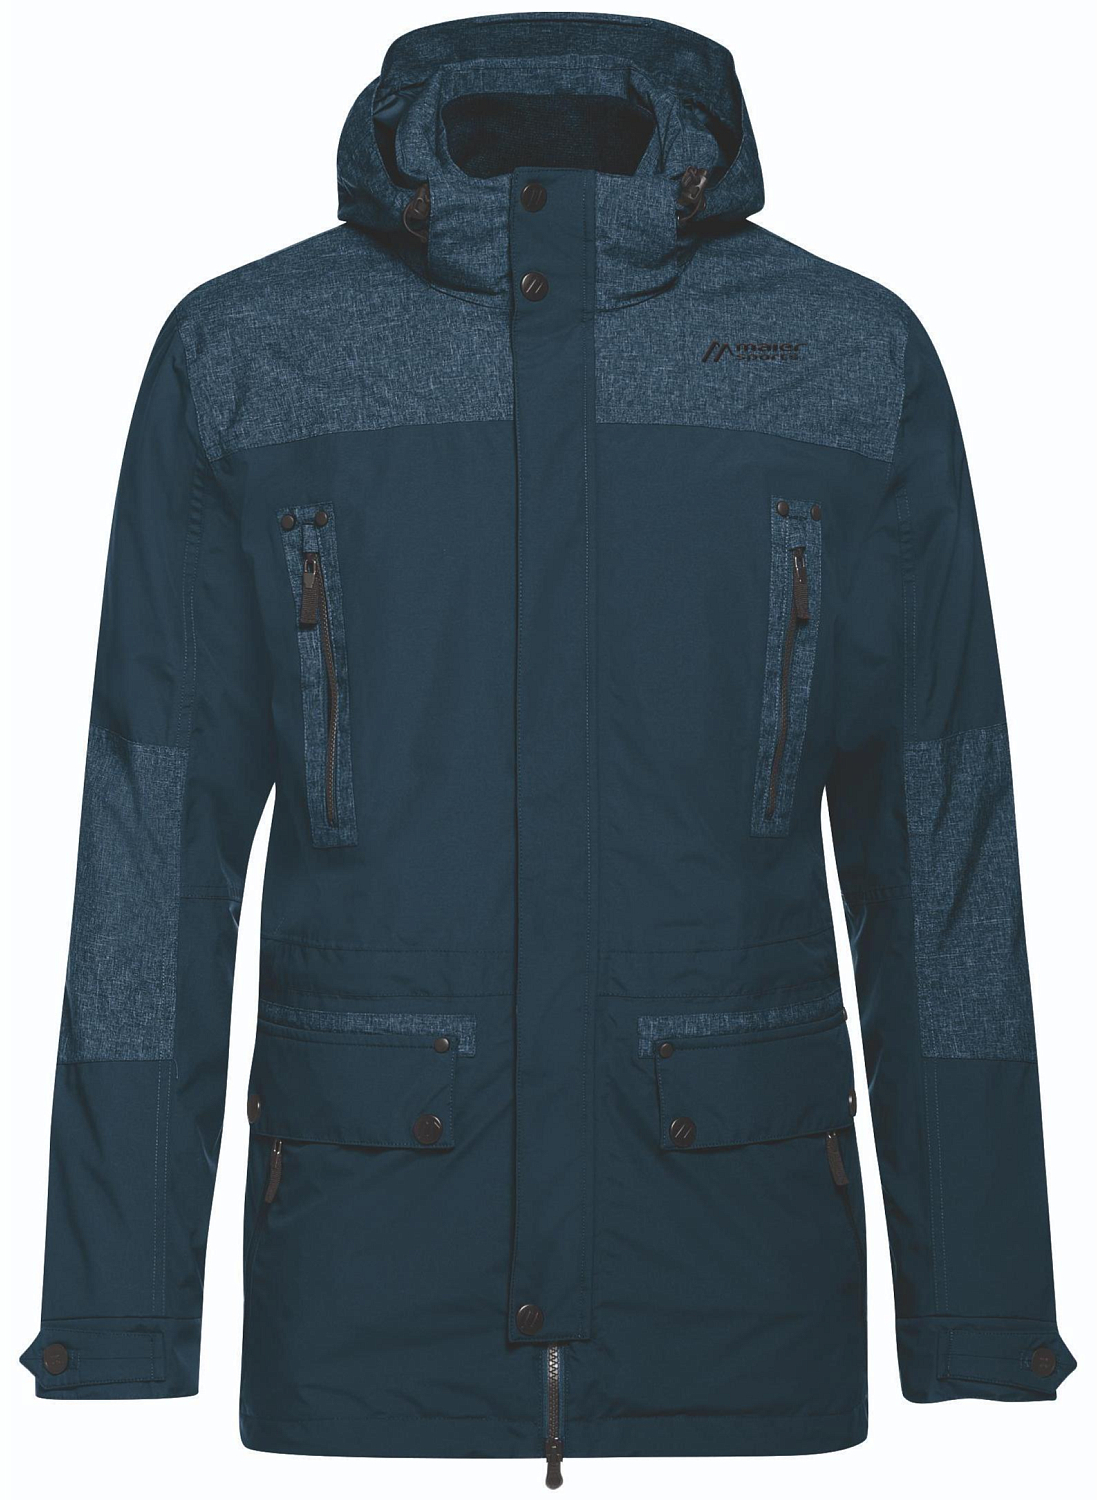 Куртка для активного отдыха Maier 2018-19 Pilton M bluewing teal